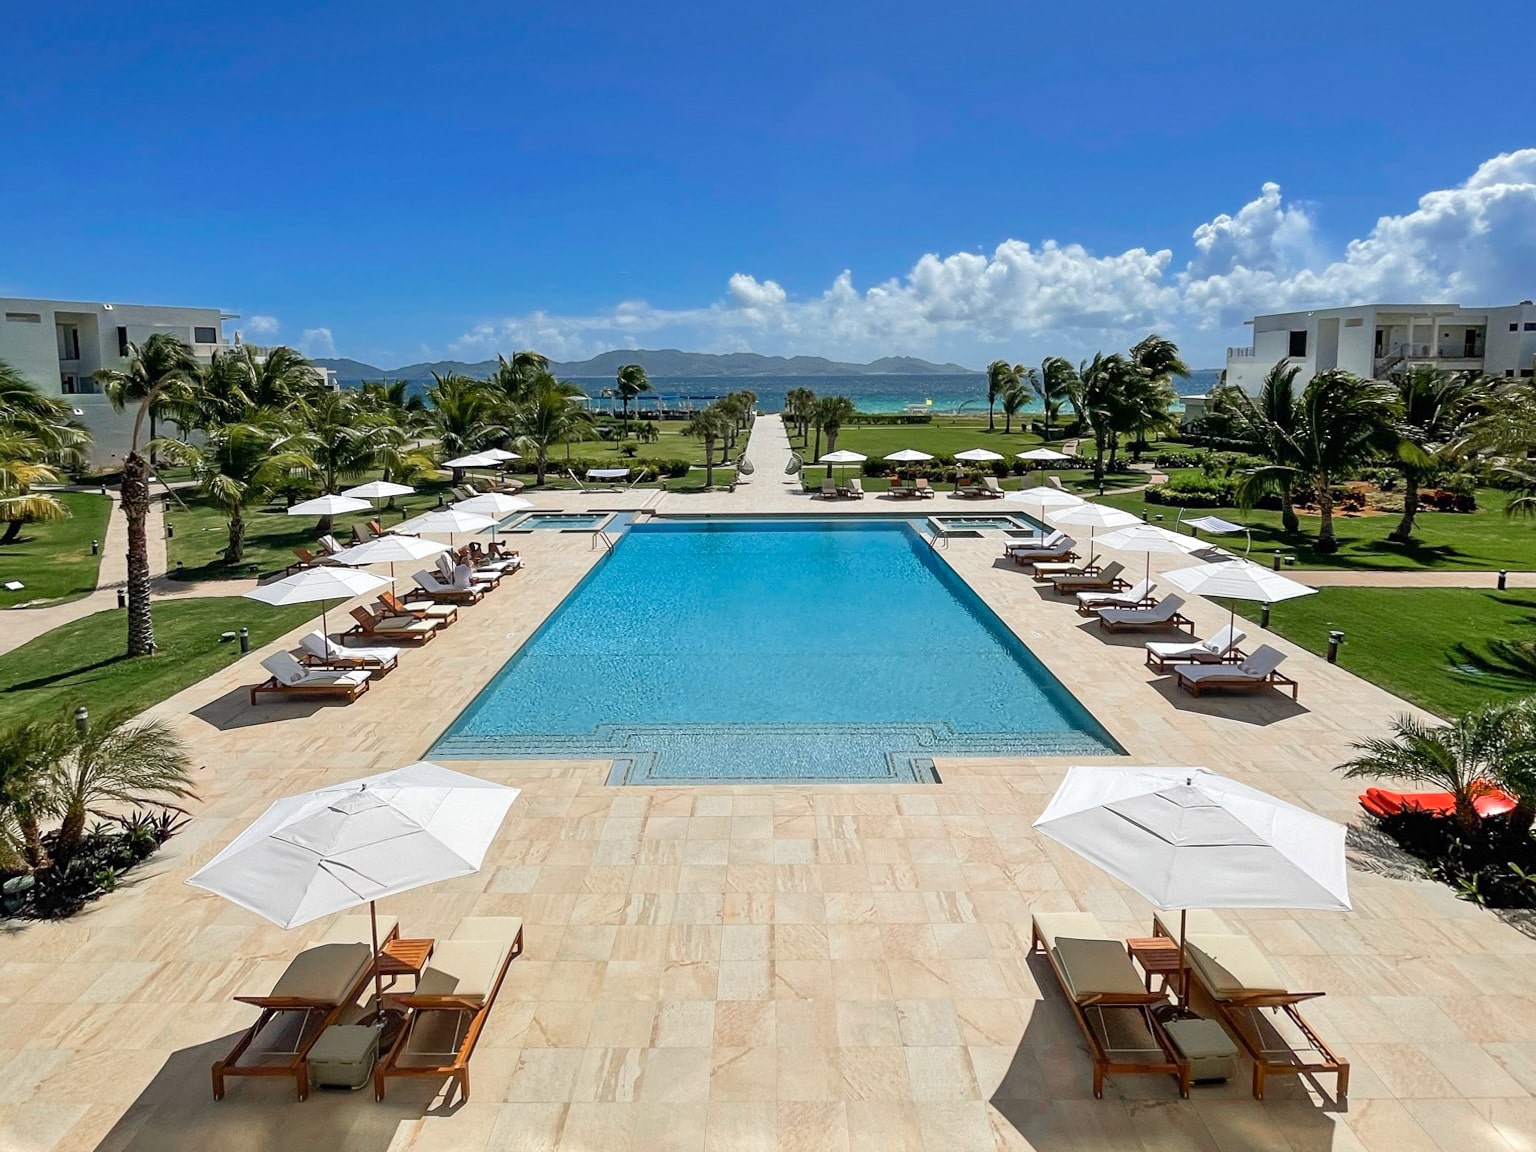 The main pool at Aurora Anguilla Golf Resort and Spa.